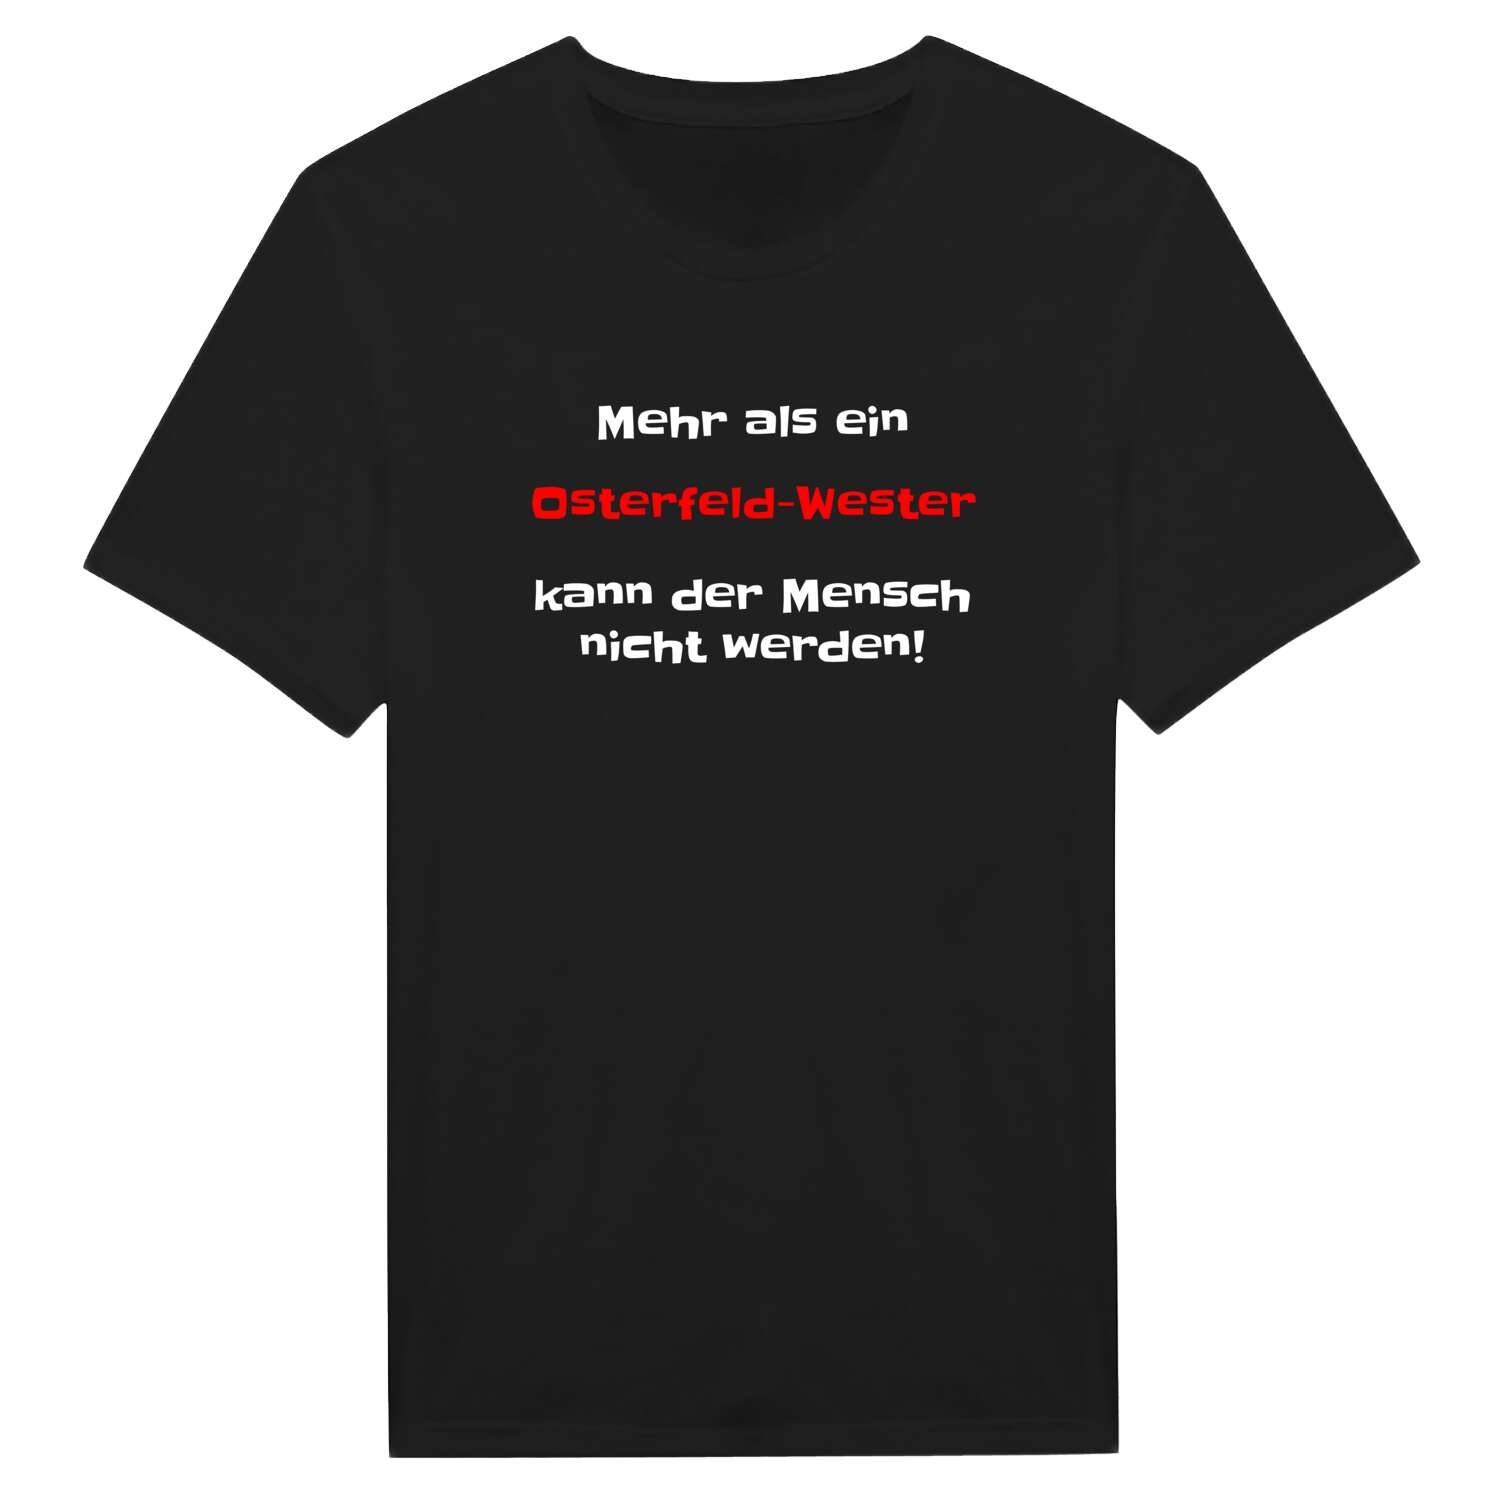 Osterfeld-West T-Shirt »Mehr als ein«